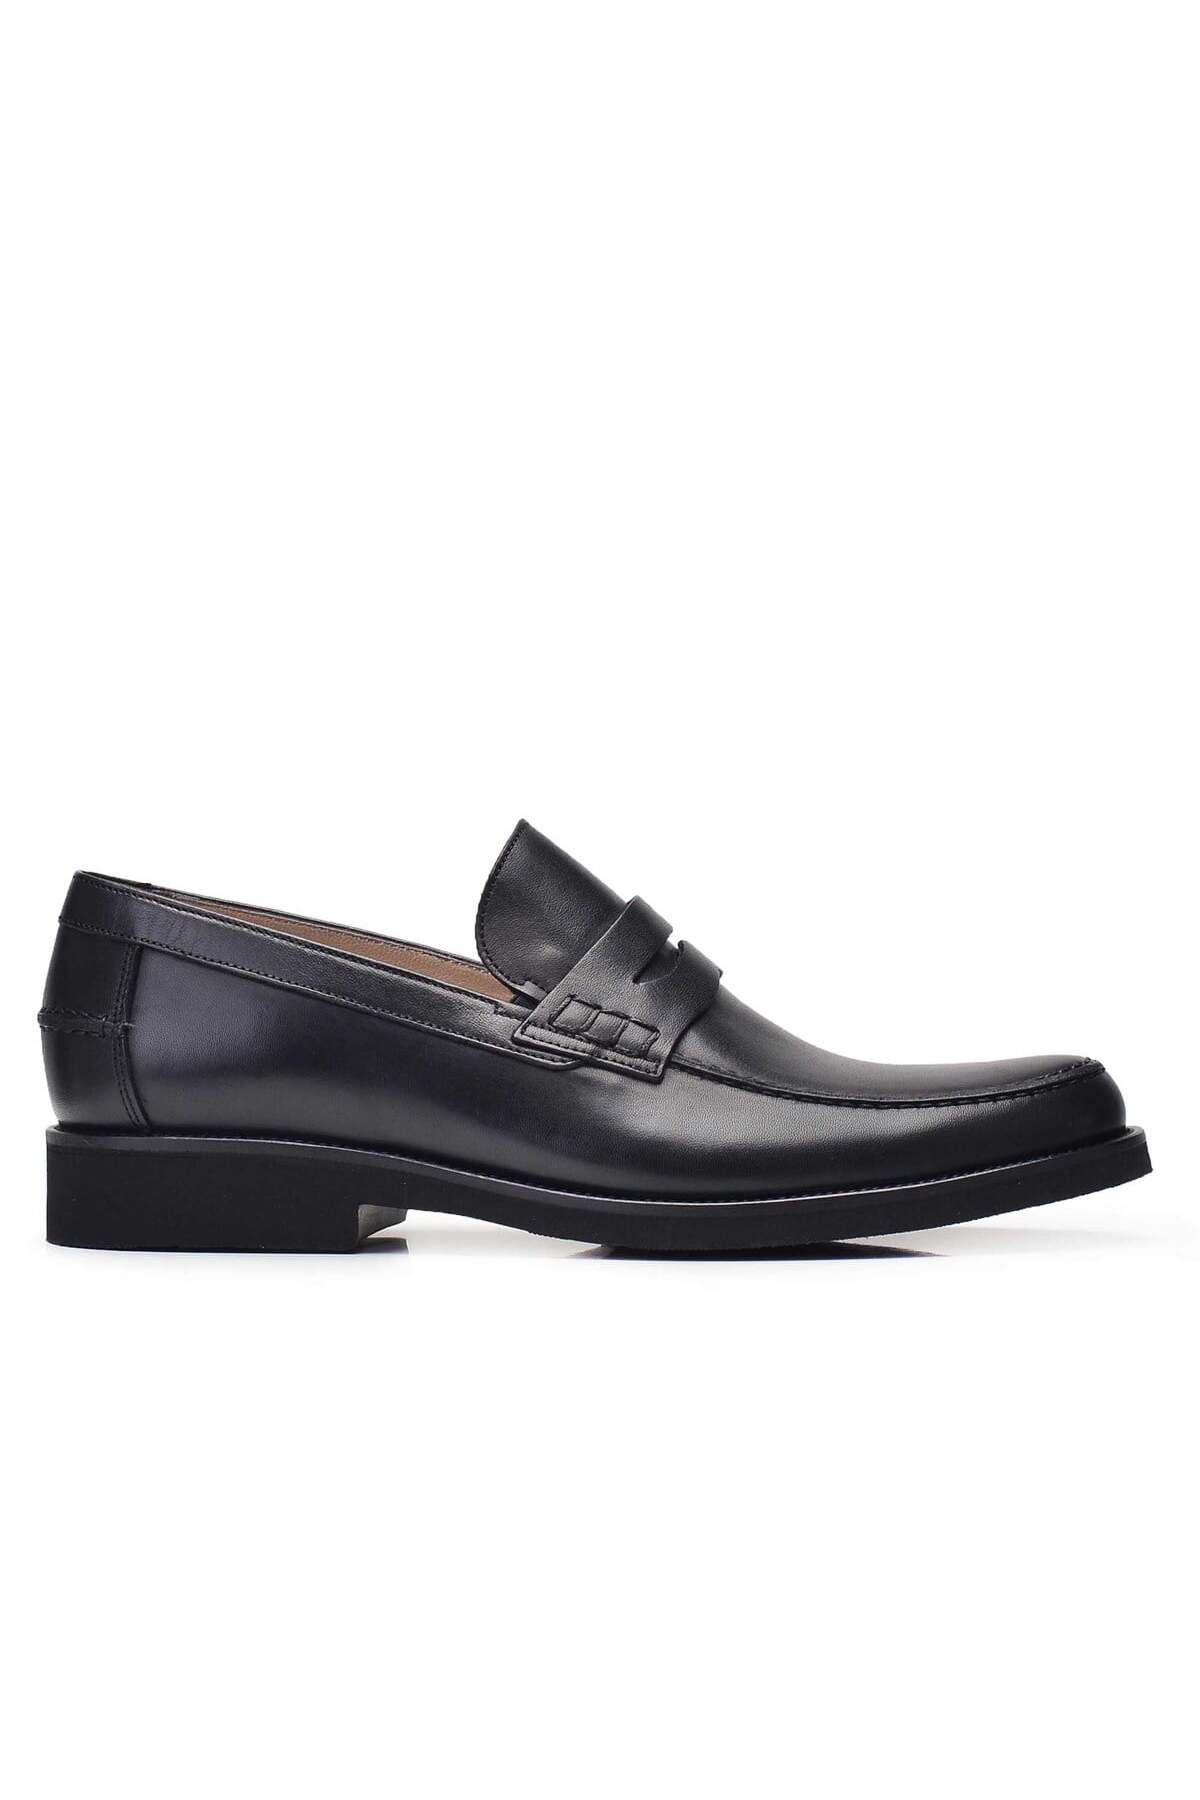 Nevzat Onay Hakiki Deri Siyah Günlük Loafer Erkek Ayakkabı -10780-